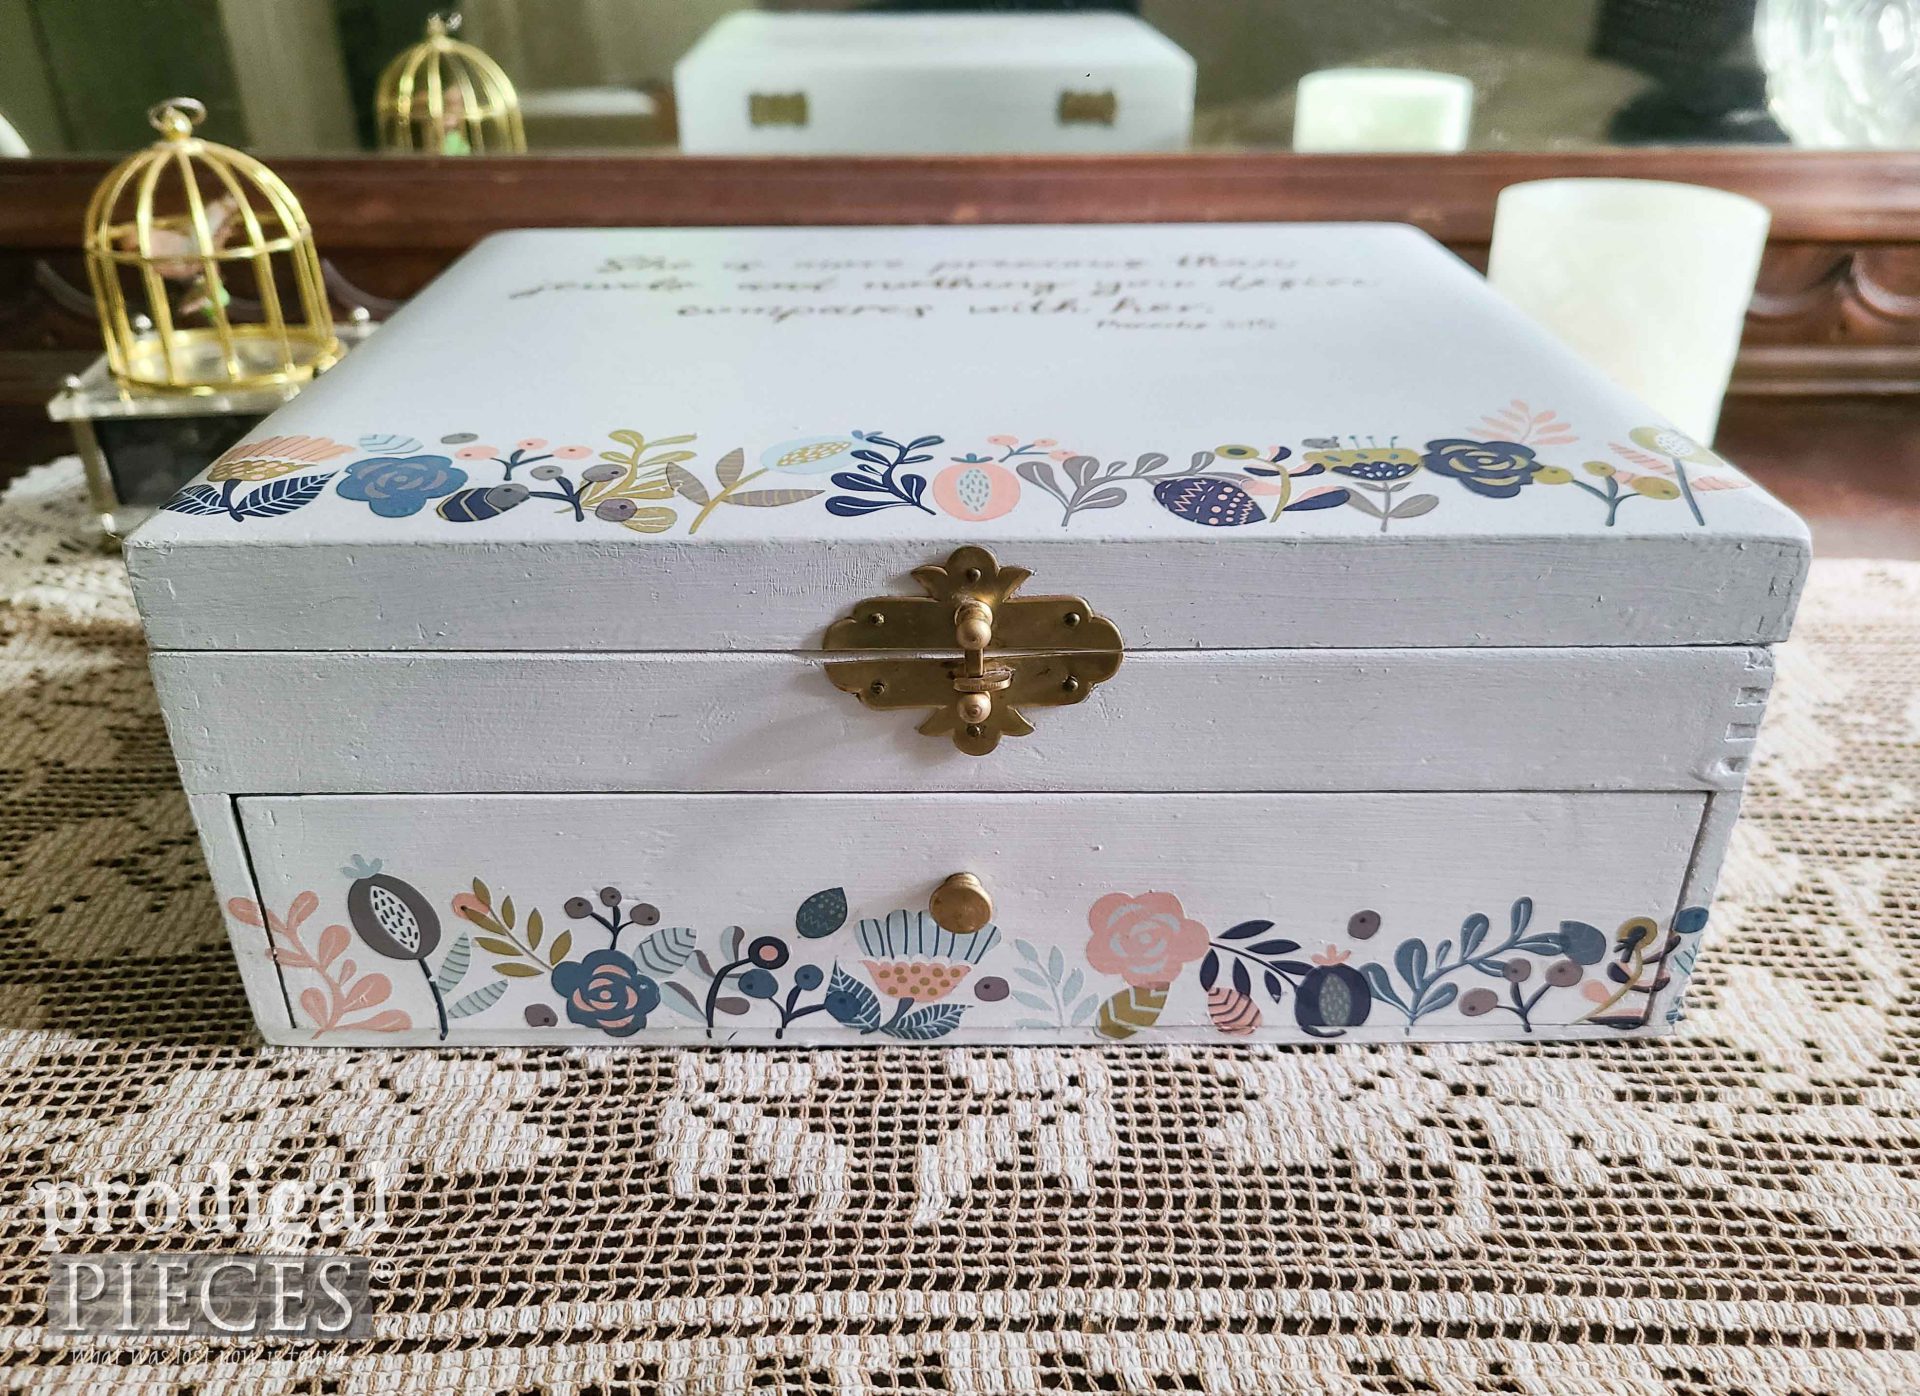 Boho Style Jewelry Box by Larissa of Prodigal Pieces | prodigalpieces.com #prodigalpieces #repurposed #jewelry #boho